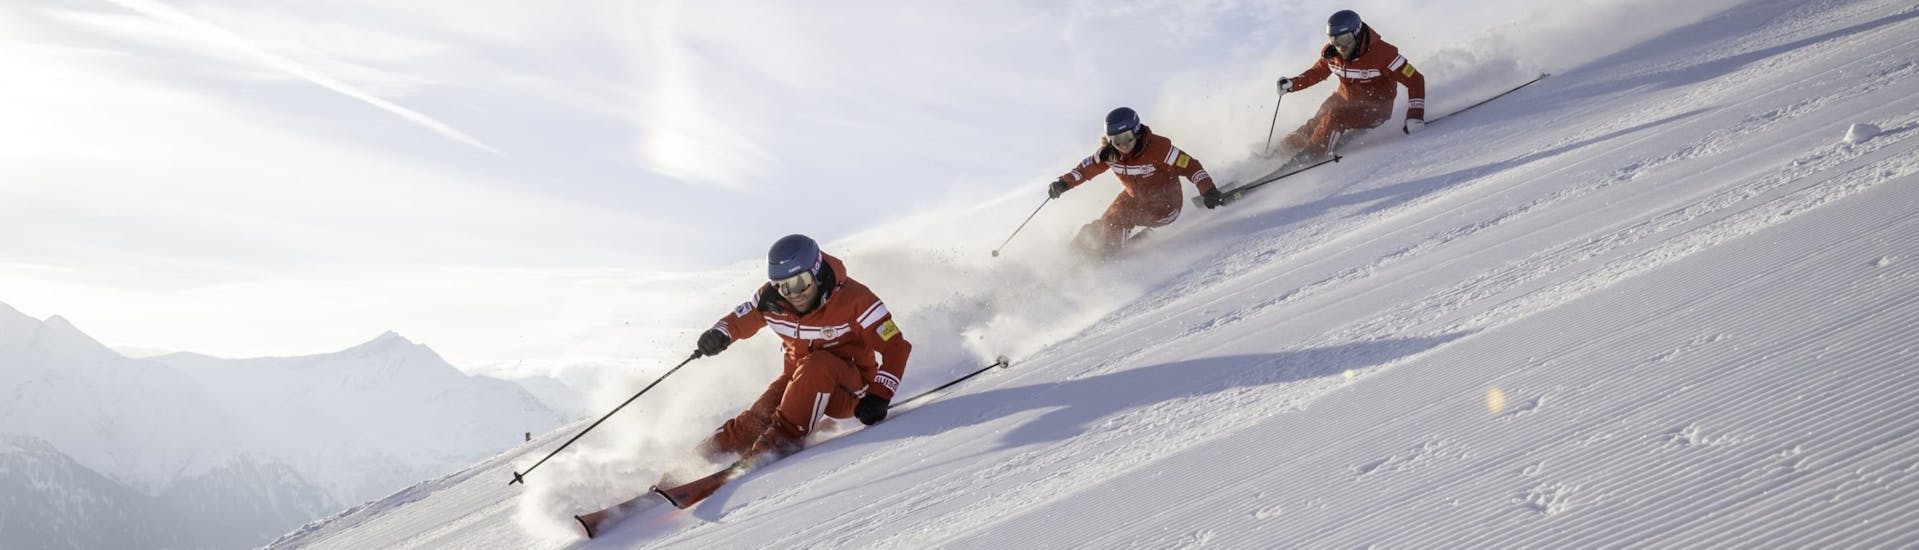 Privé skilessen voor volwassenen vanaf 14 jaar.